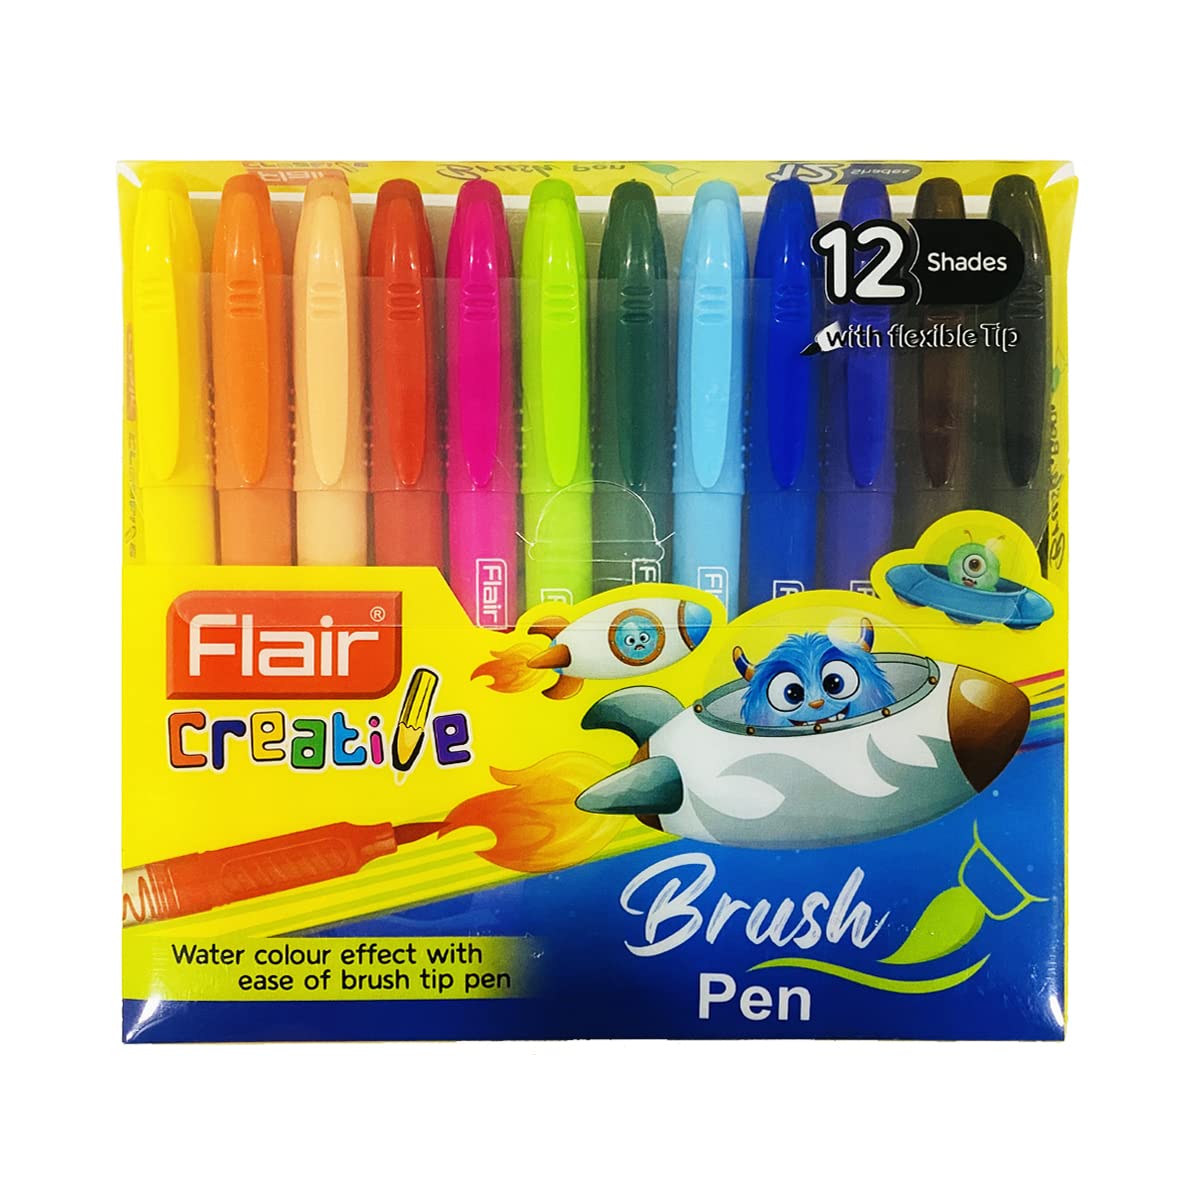 Flair Creative Brush Pen 12 Shades